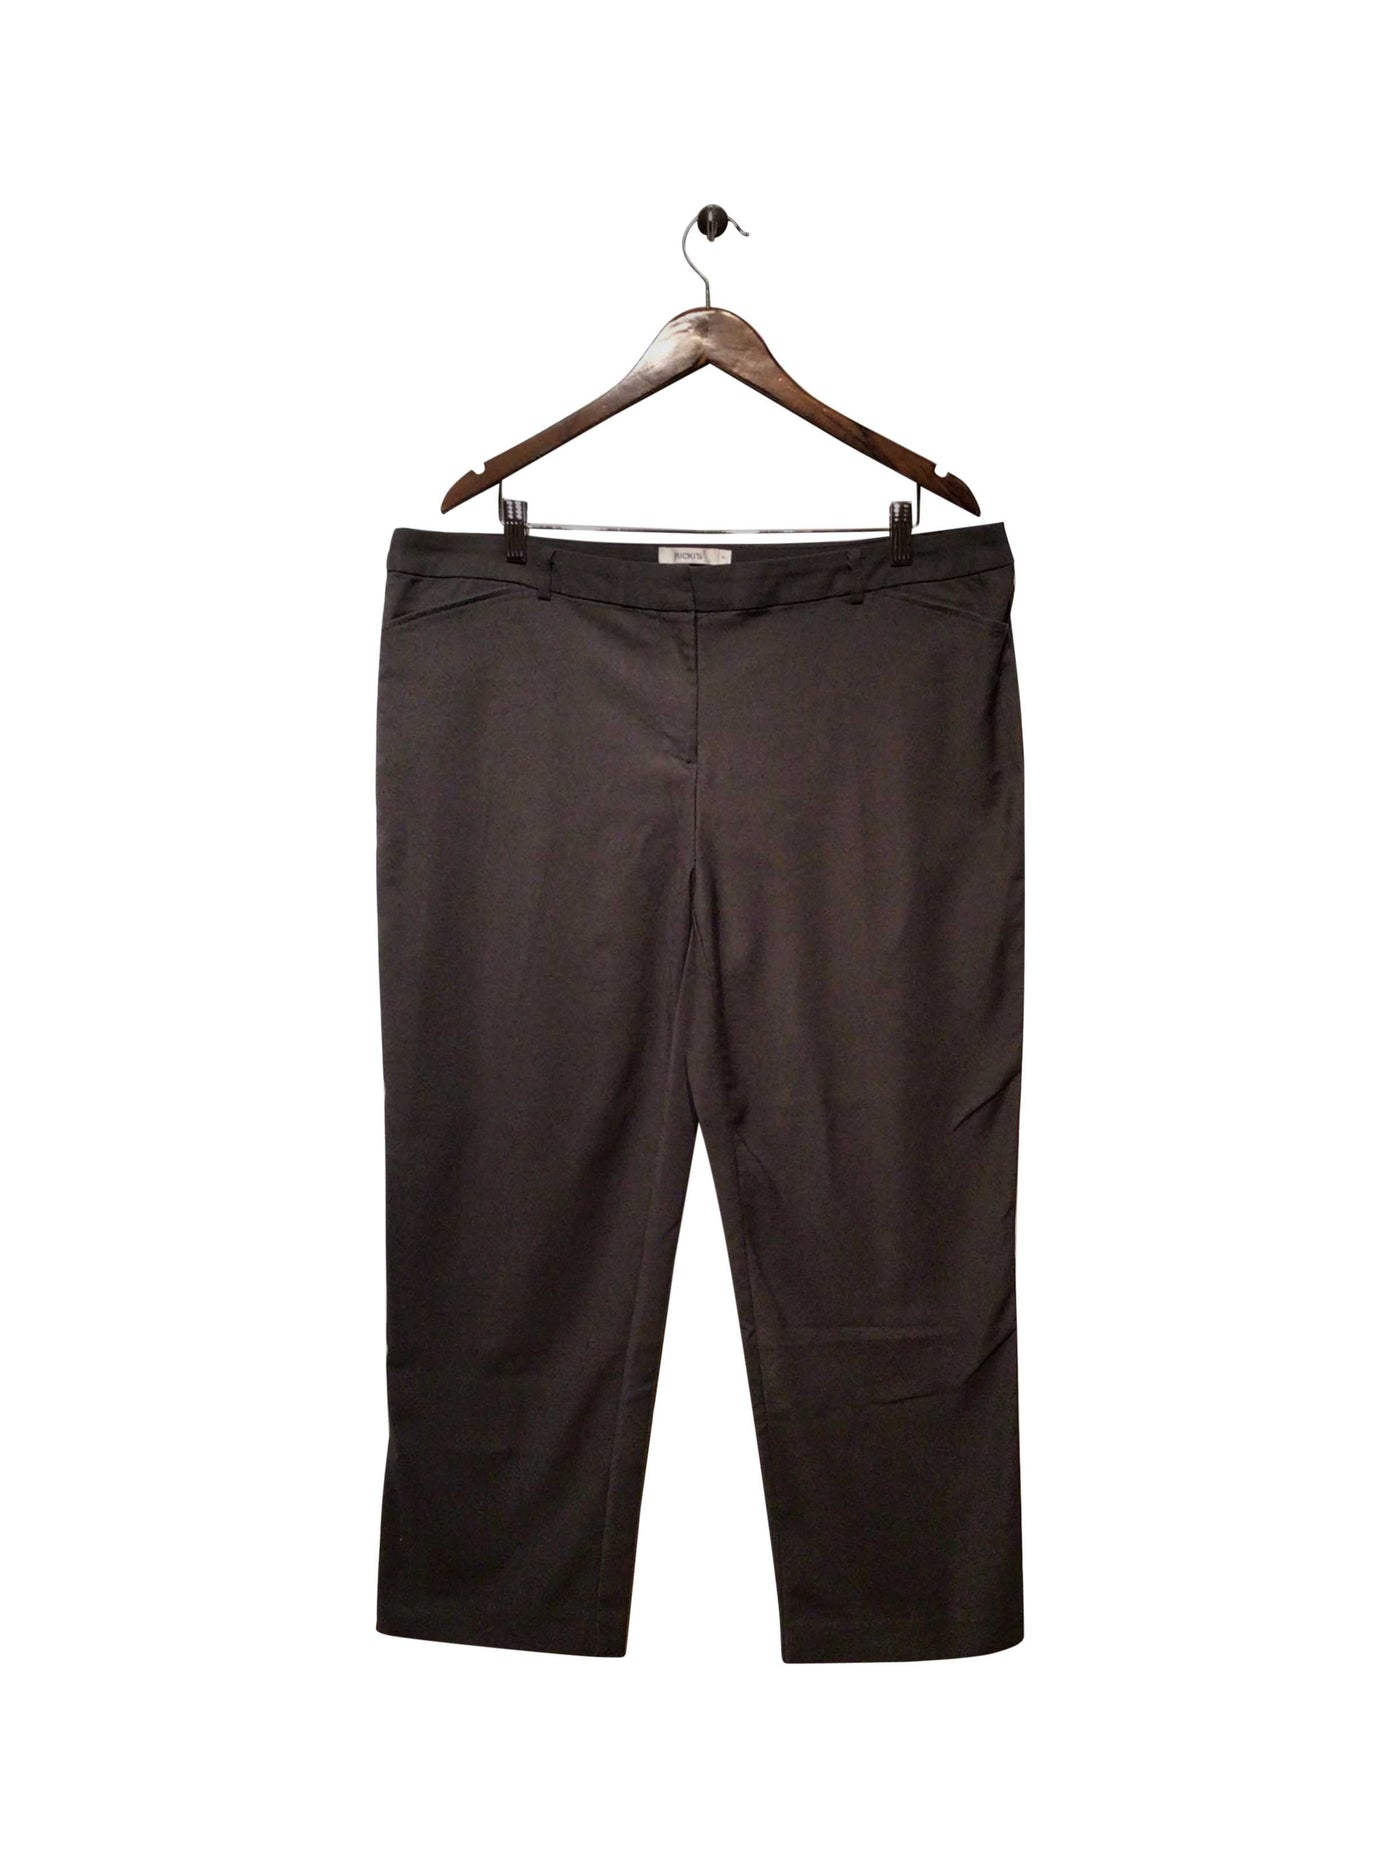 RICKI'S Regular fit Pant in Gray  -  16  14.90 Koop